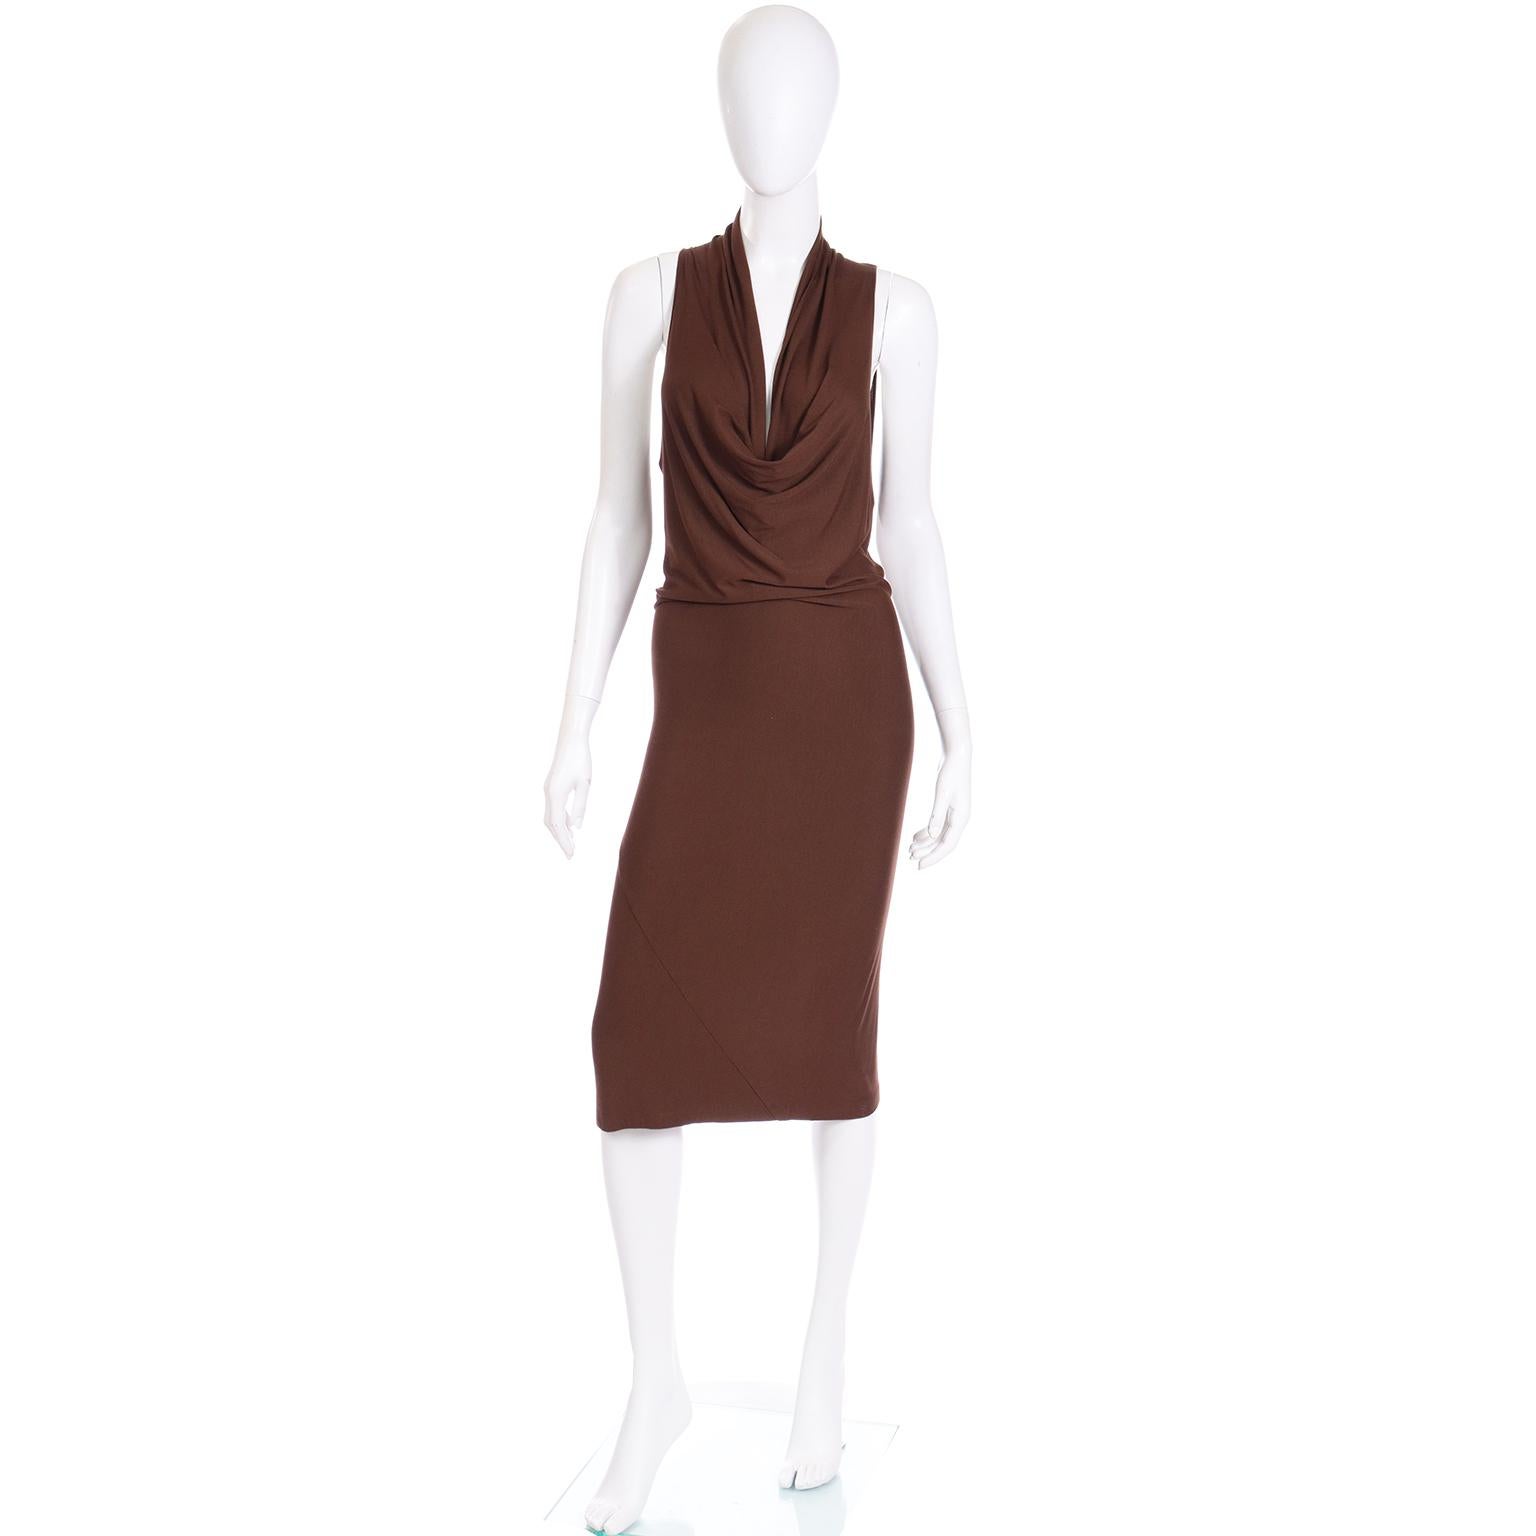 Wir lieben es immer, ältere Vintage-Stücke von Donna Karan zu finden! Dies ist eine wunderschöne frühen 1990er Donna Karan braunen Stretch-Jersey-Kleid mit einem niedrigen plunging drapierten Ausschnitt und pintucked vorne. Dieses minimalistische,